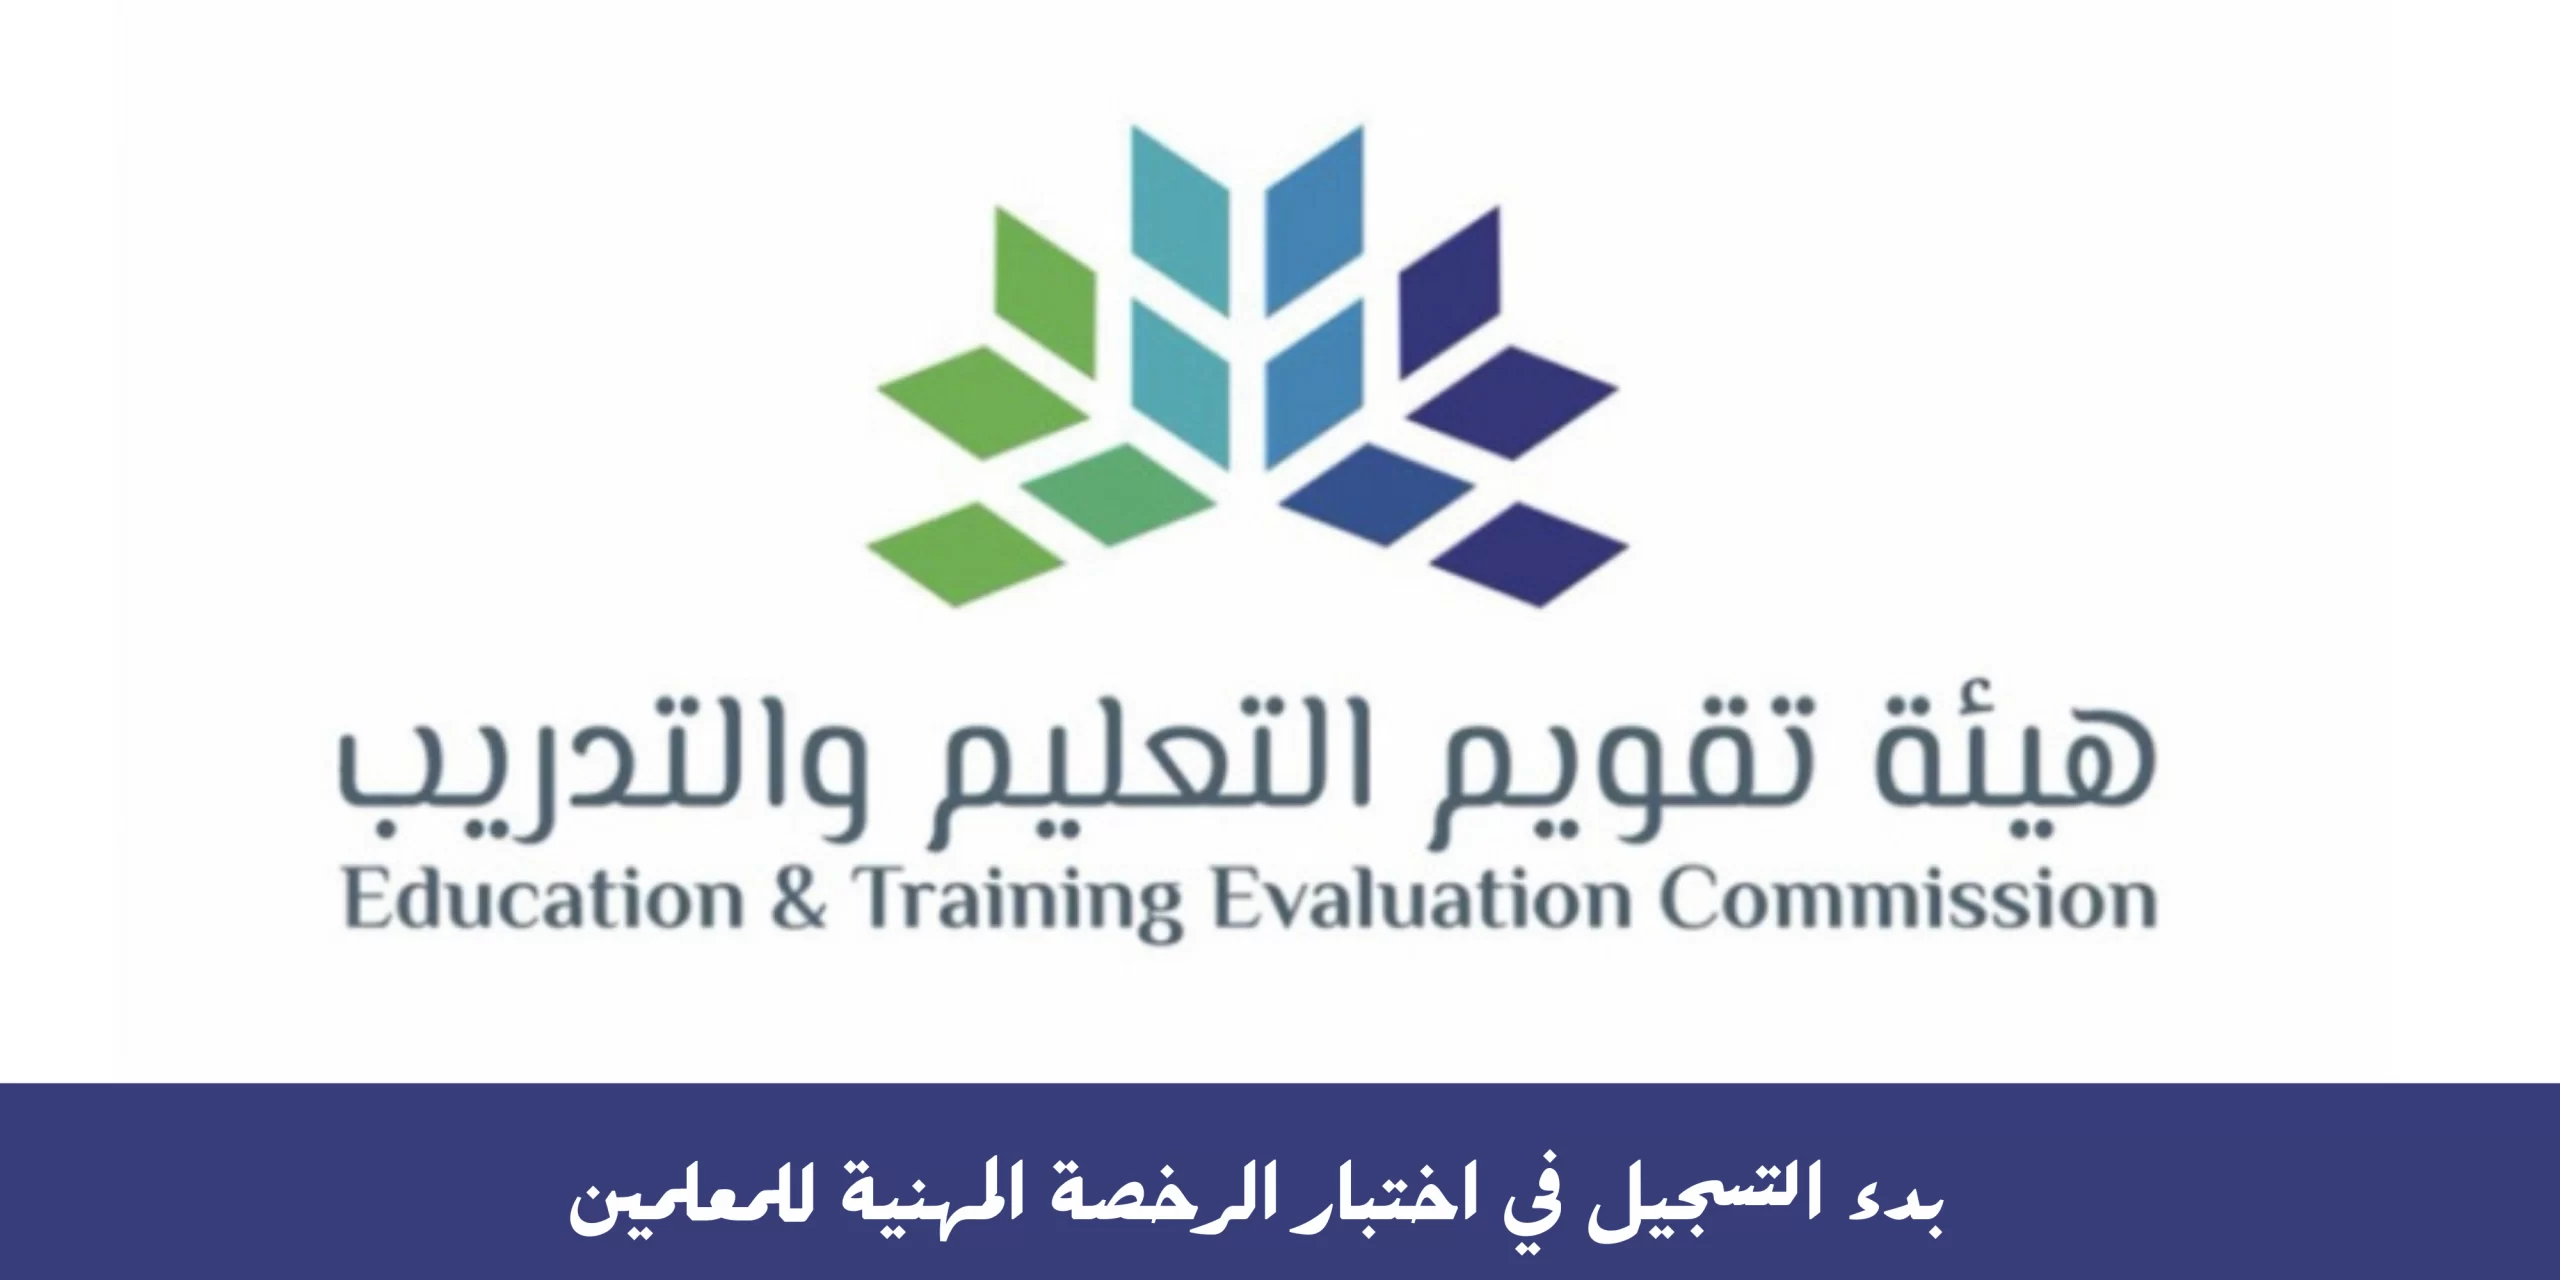 هيئة تقويم التعليم والتدريب تعلن عن خطوات وشروط التسجيل في اختبار الرخصة المهنية